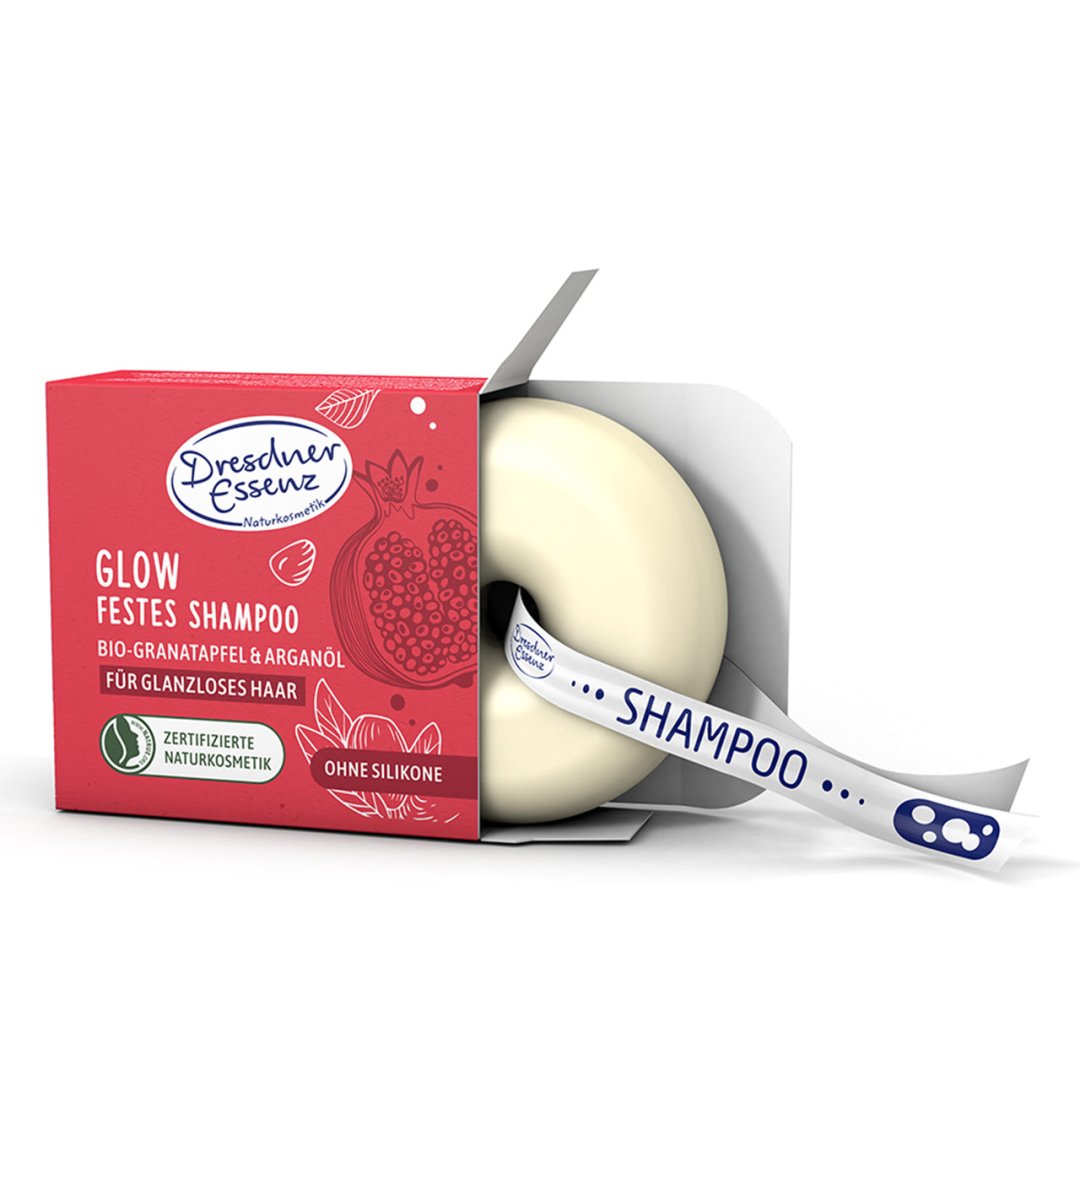 Dresdner Essenz® | GLOW | Festes Shampoo | Bio-Granatapfel & Arganöl | 65 g